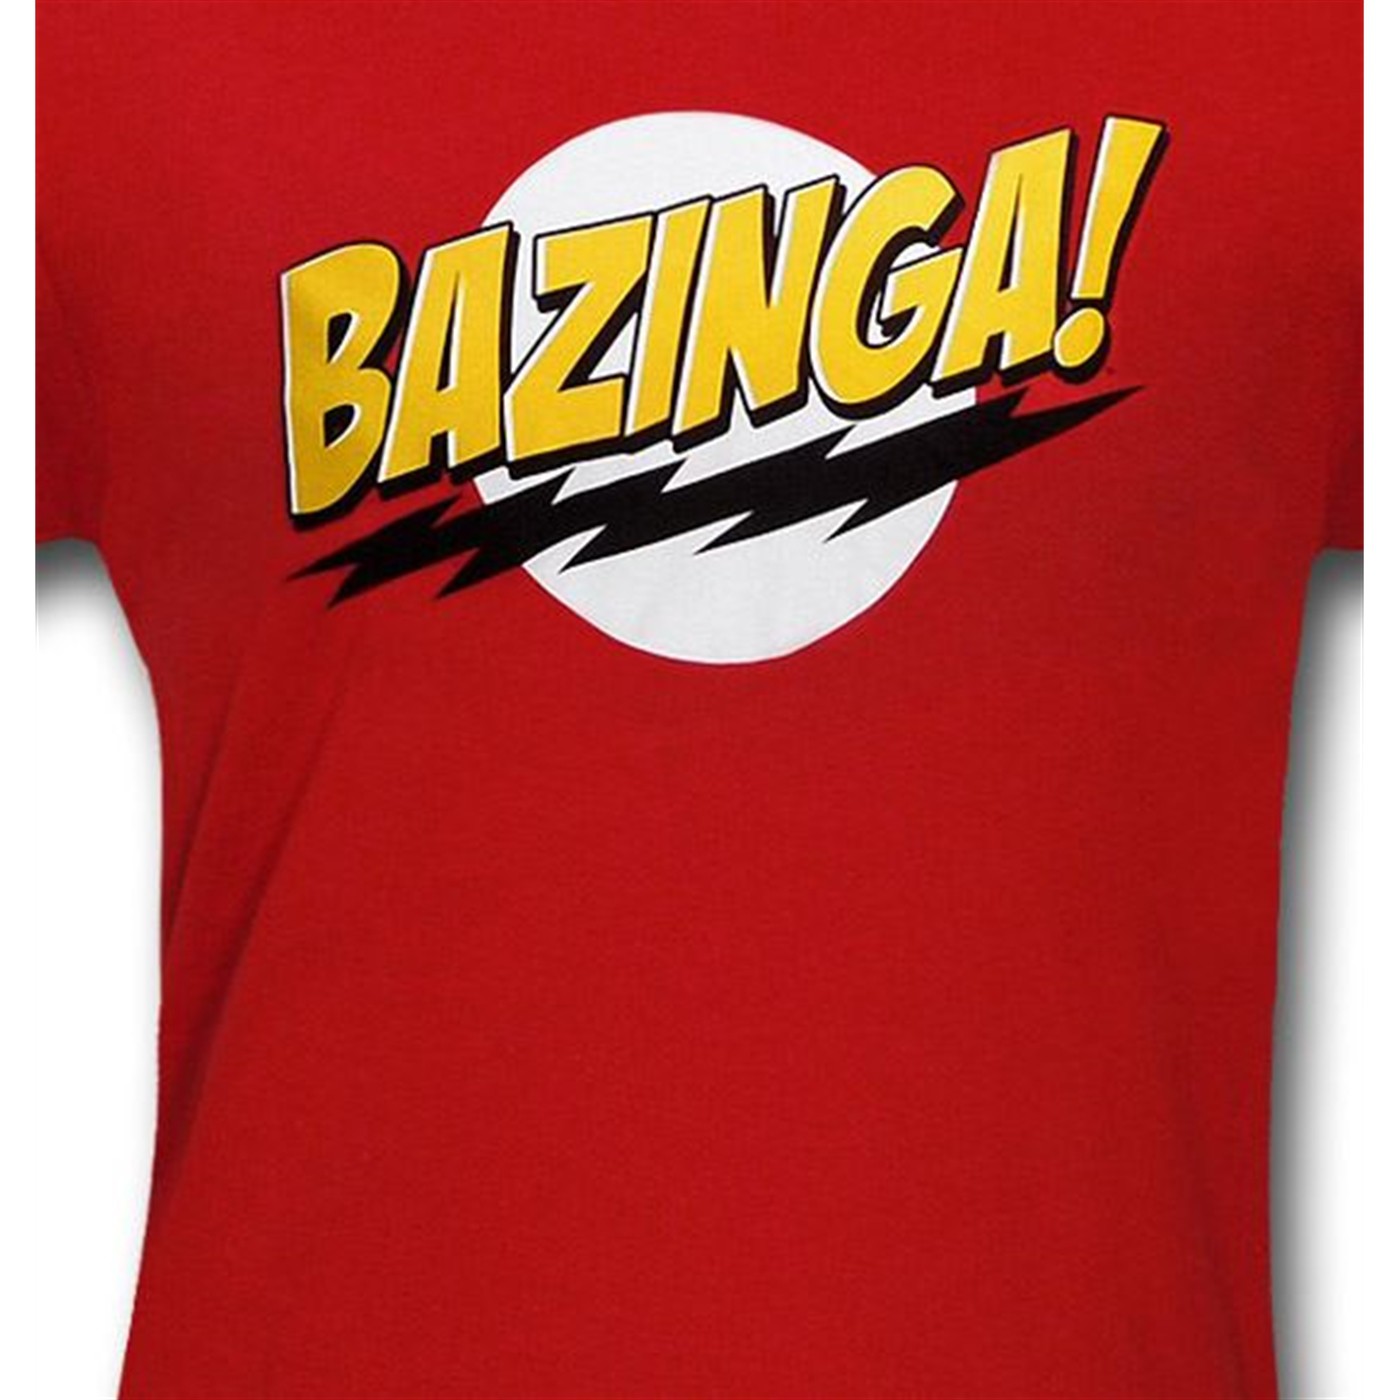 Big Bang Theory Bazinga Kids T-Shirt